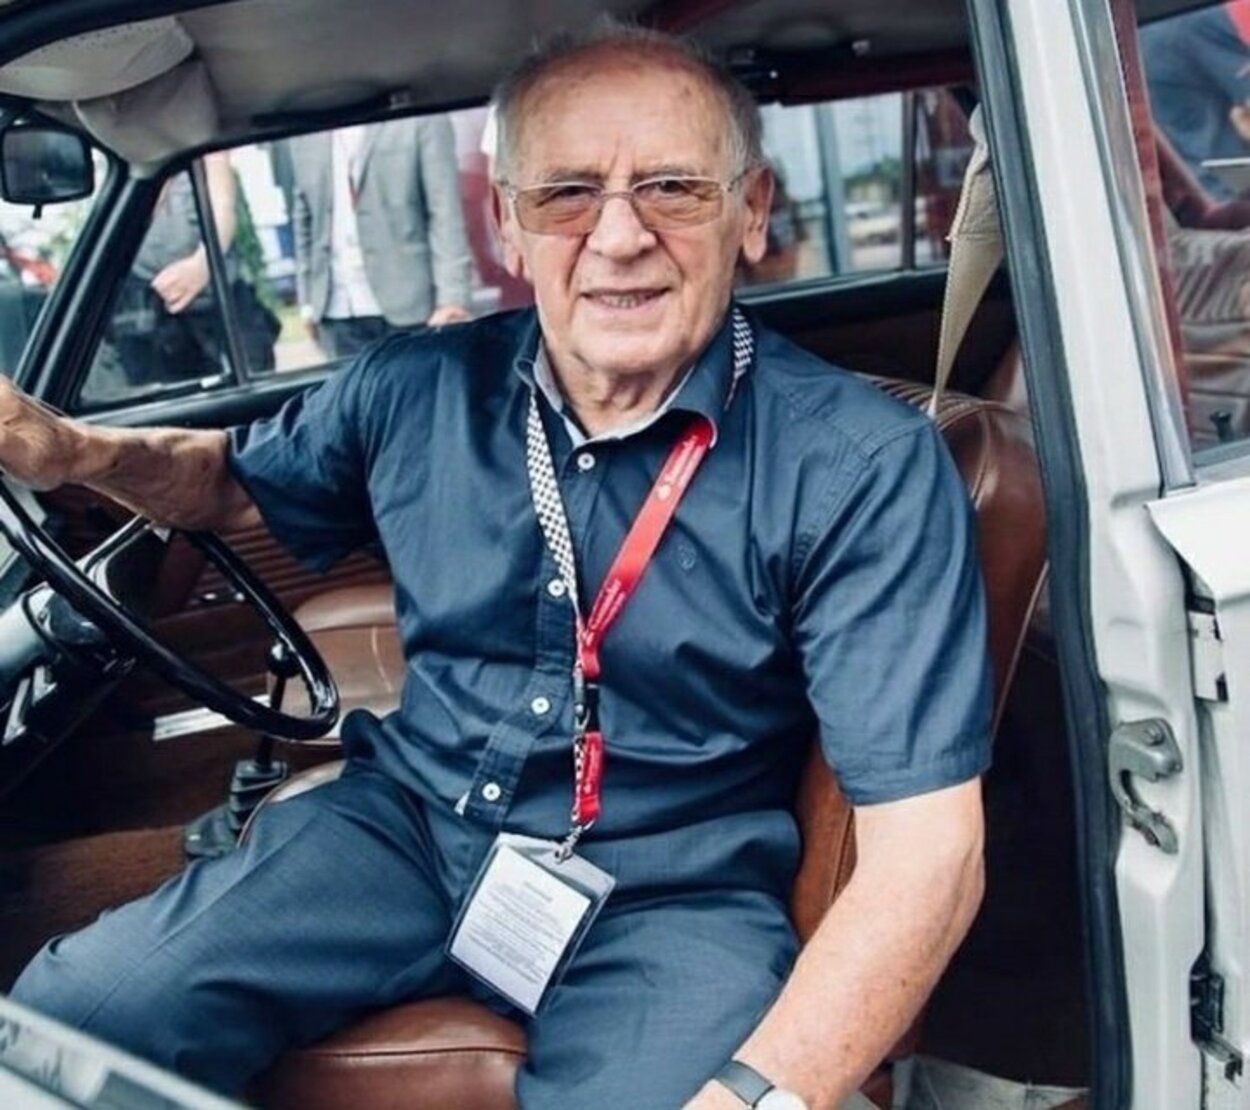 Sobieslaw Zasada correrá el extremo Rally Safari con 91 años